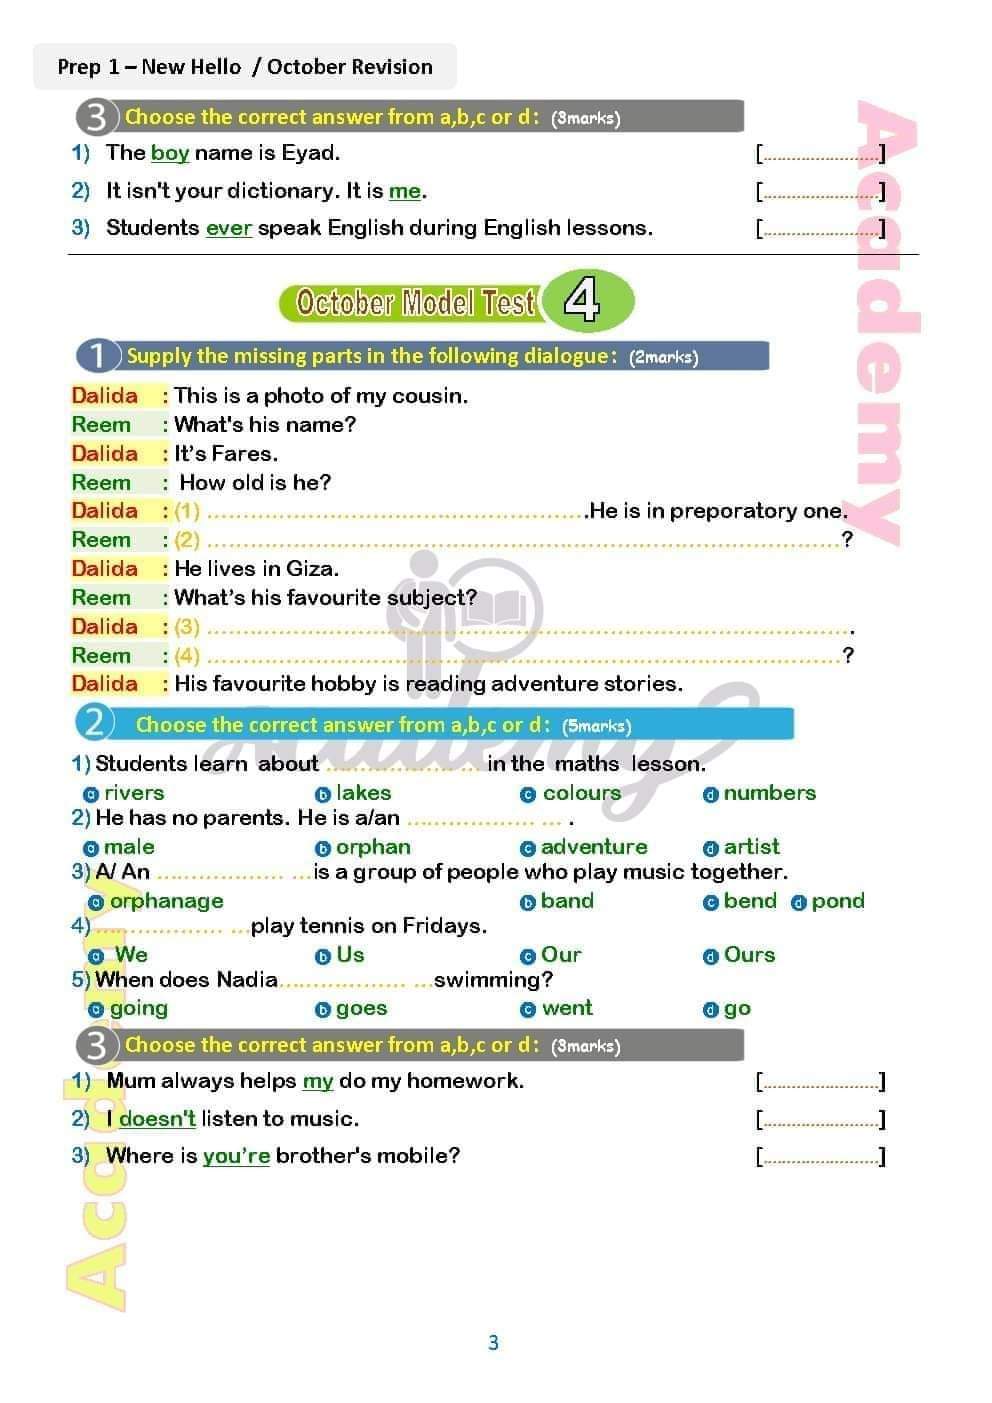 نماذج اختبارات لغة انجليزية متوقعة من كتاب new hello academy